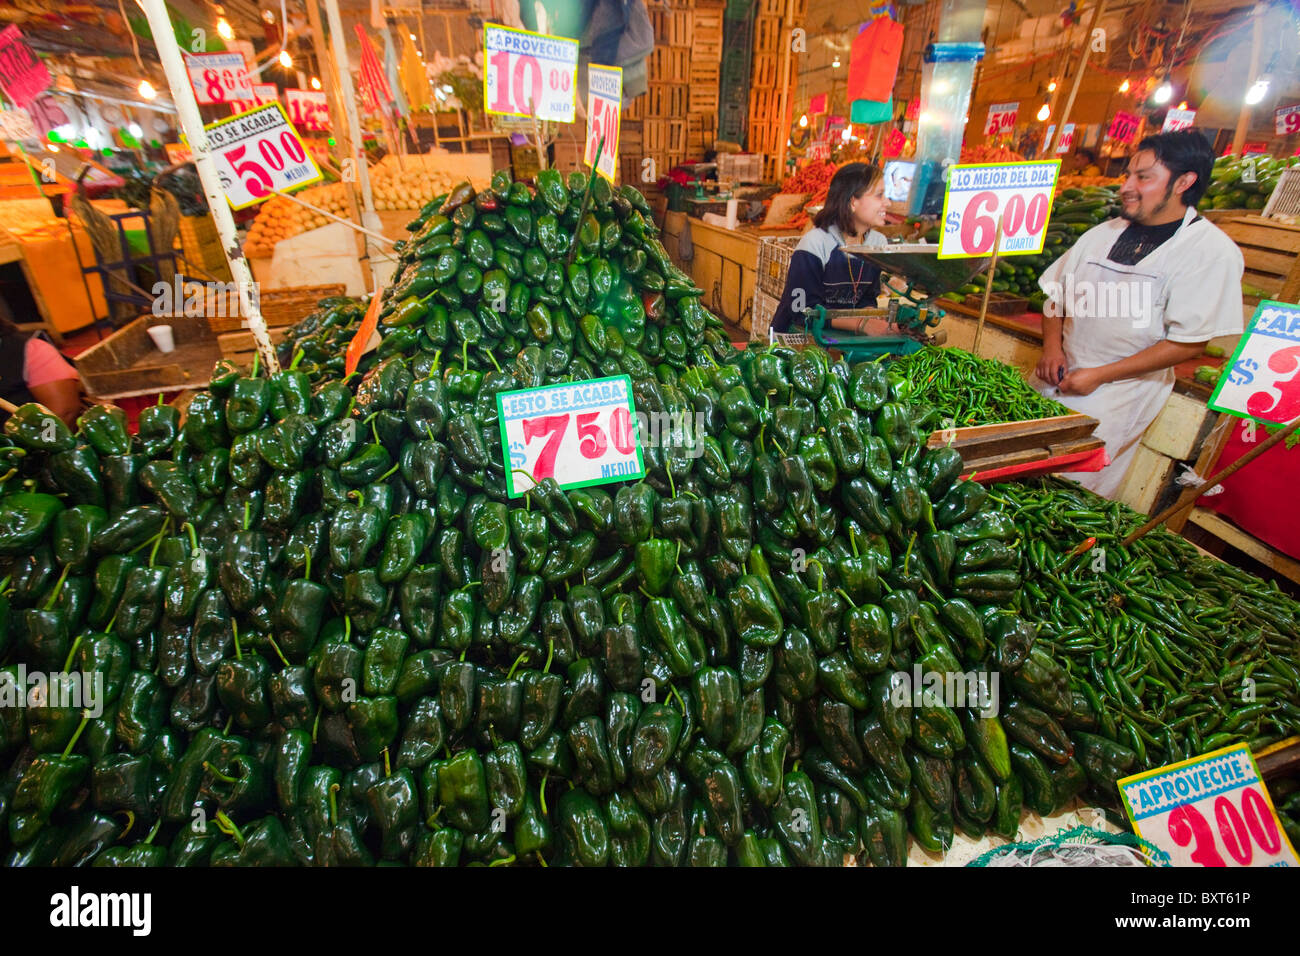 Chilis, La Merced Market in Mexico City Stock Photo